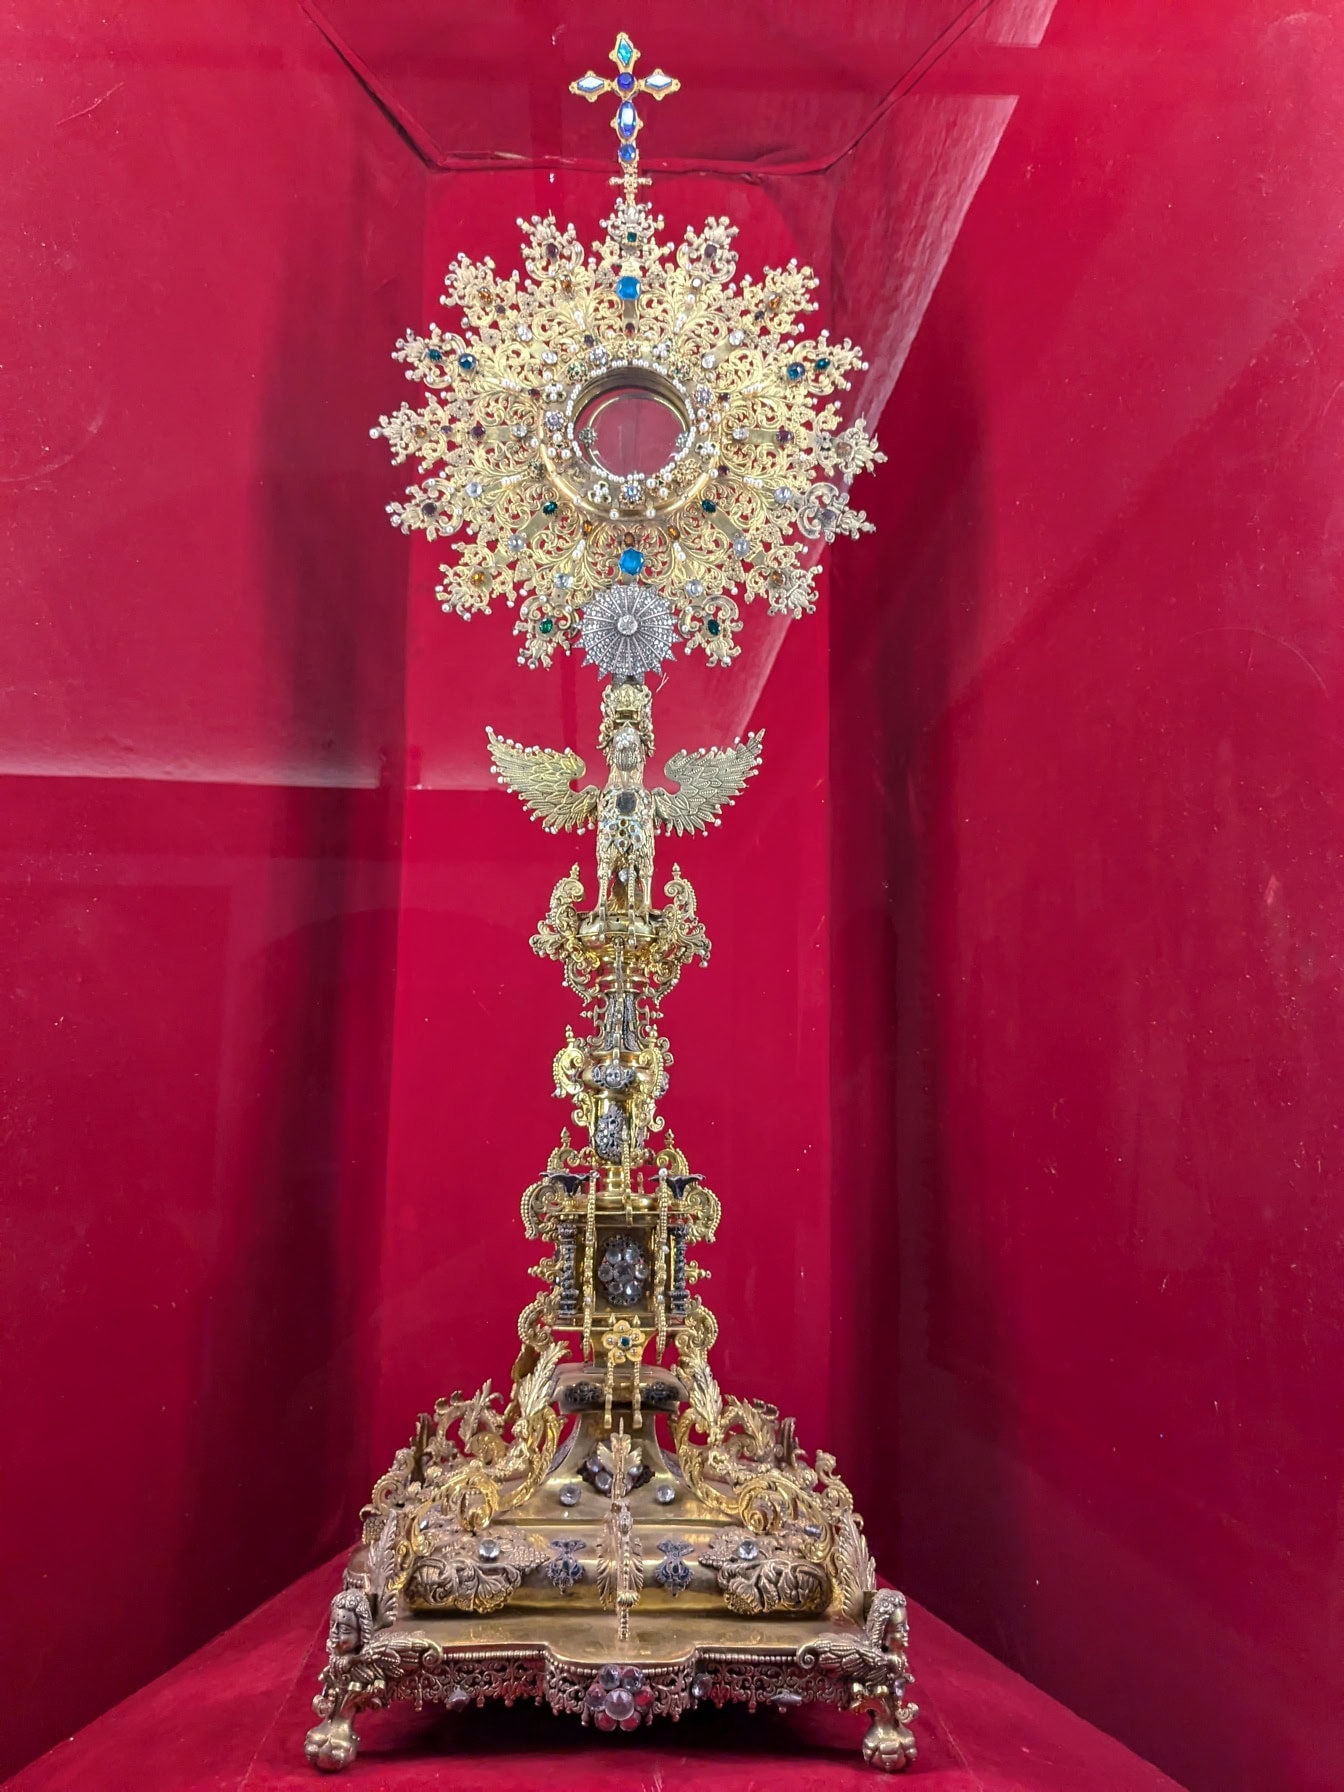 มรดกทางศาสนาของชาวเปรูซึ่งเป็นวัตถุสีทองหรูหราพร้อมไม้กางเขนจัดแสดงในโบสถ์เยซูอิตในอาเรกีปาในเปรู